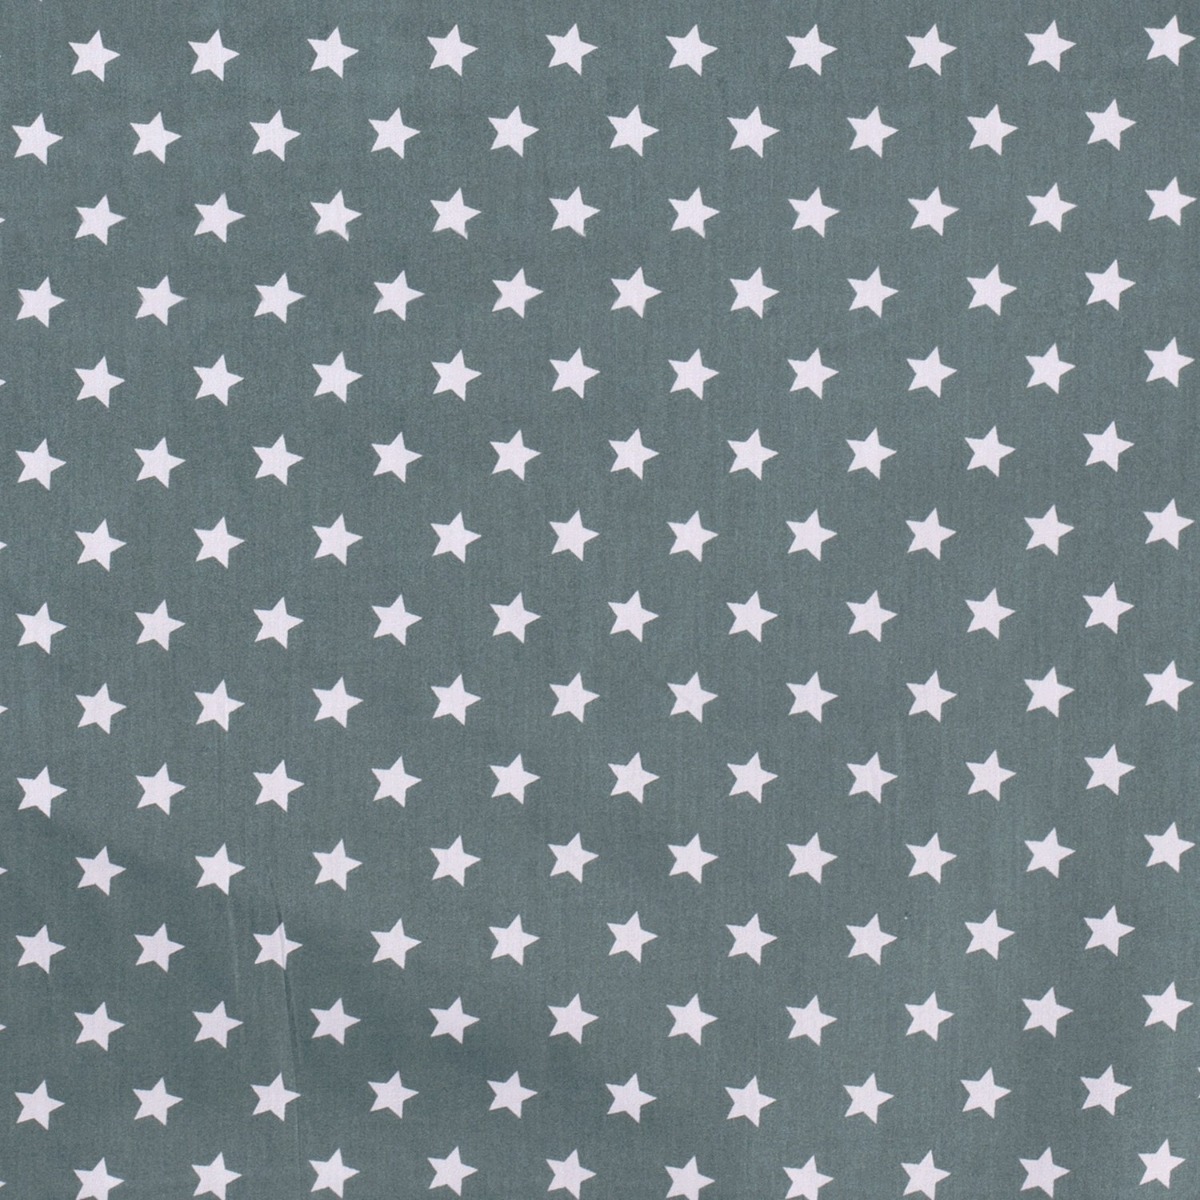 Baumwolle Sterne Standard Dunkelmint 